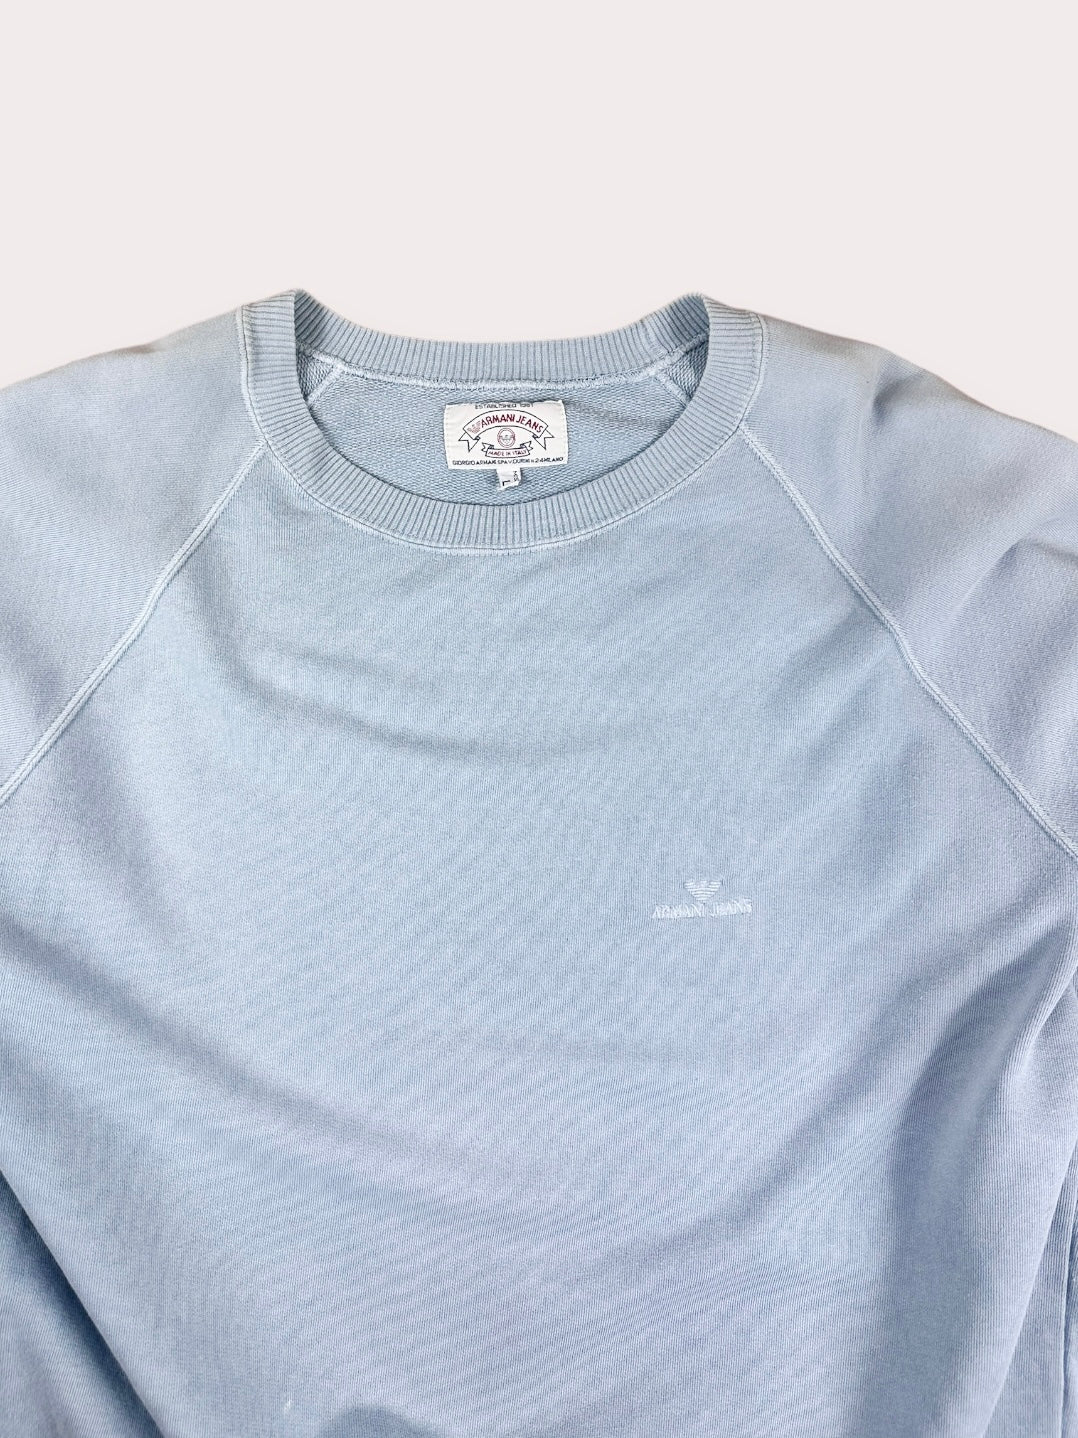 Vintage armani blue sweatshirt